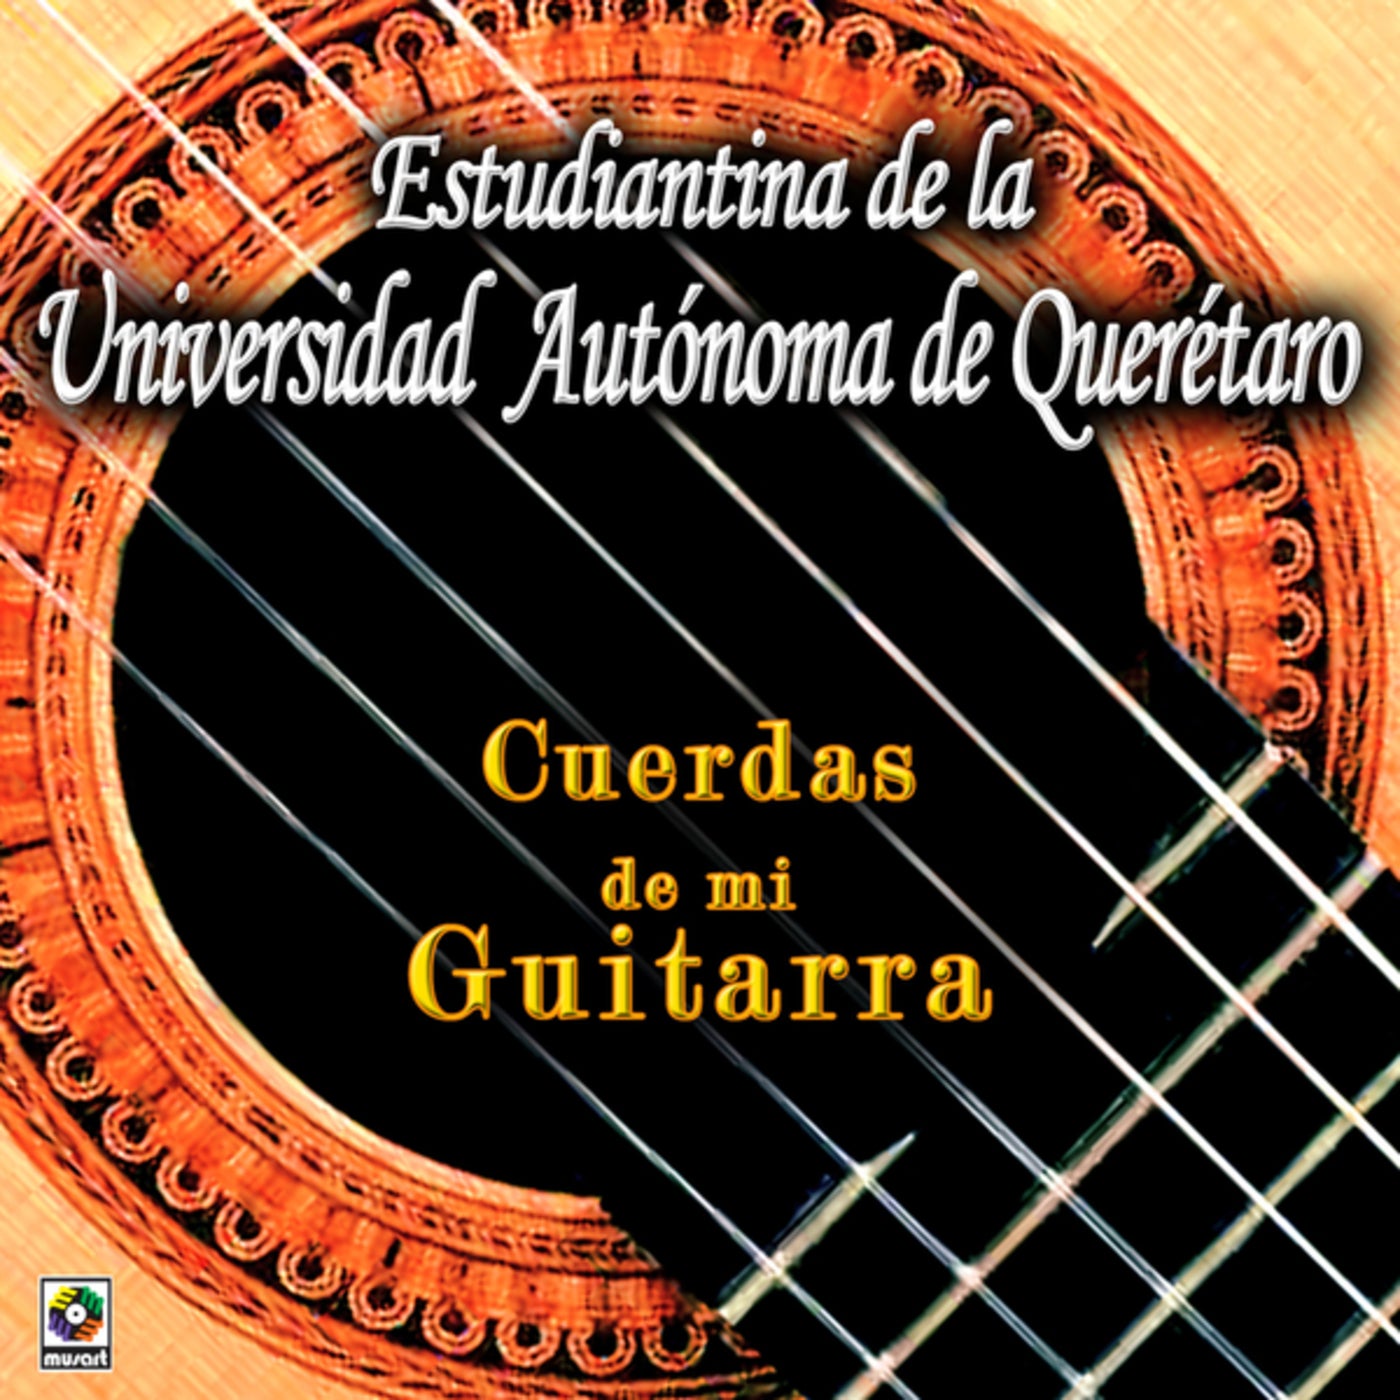 dolor de estómago orquesta Ordenado Cuerdas De Mi Guitarra by Estudiantina de la Universidad Autónoma de  Querétaro on Beatsource